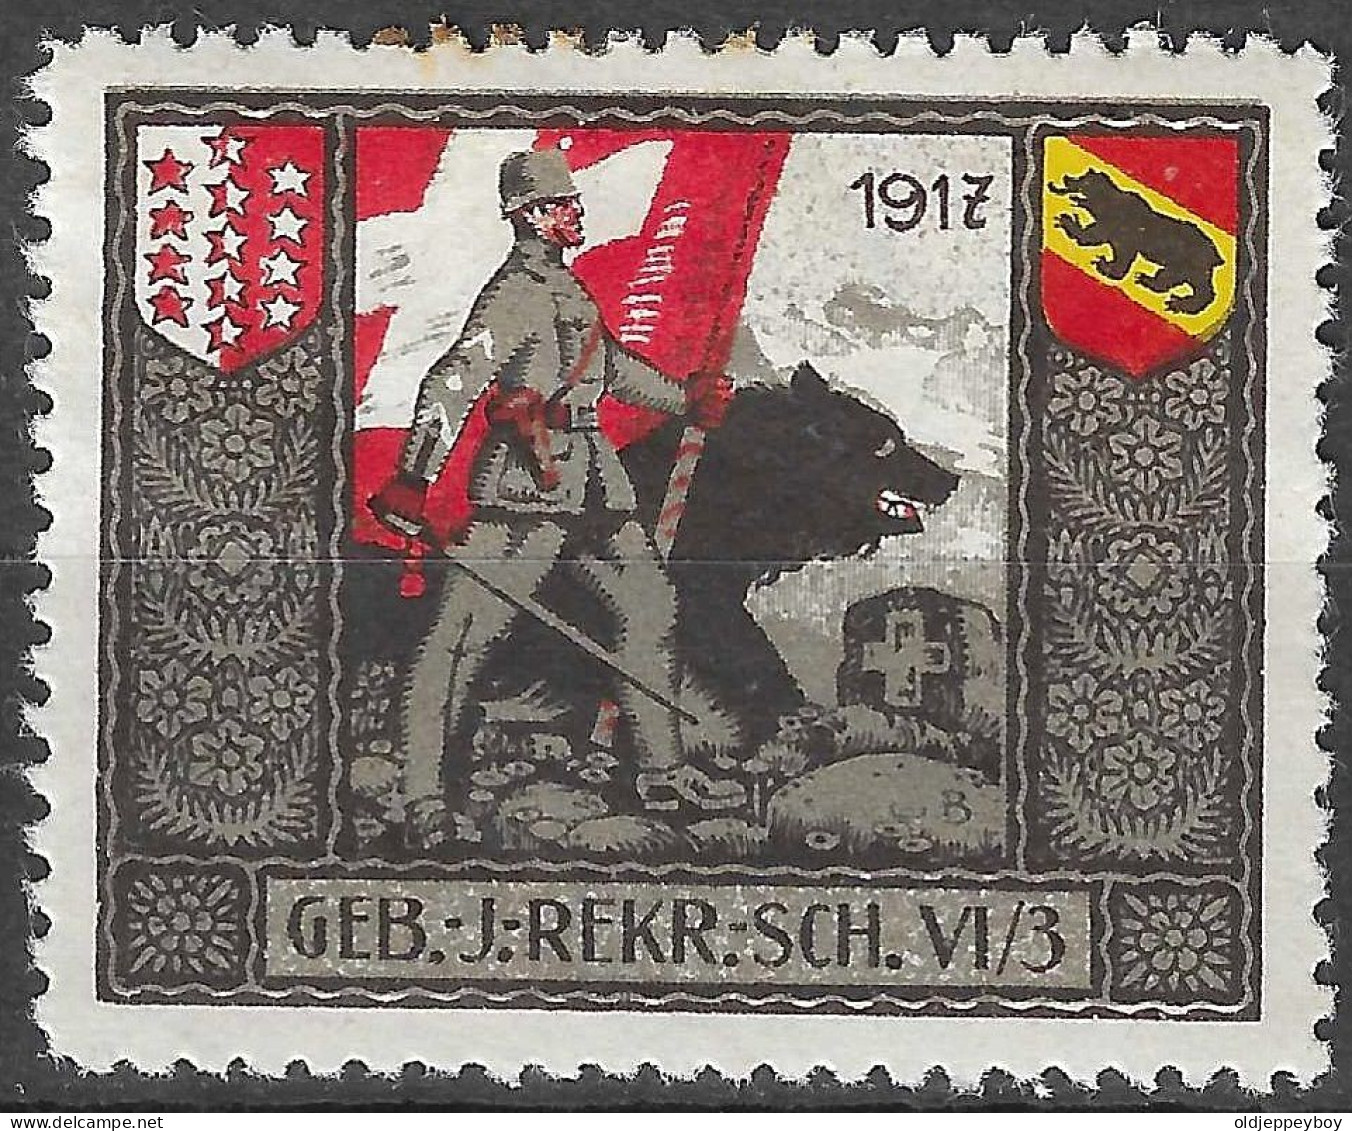 1914-1918 SWITZERLAND Soldatenmarken Suisse Militaire Vignette 1917 GEB.J.REKR.SCH.VI/3 MLH FULL GUM VF - Vignetten